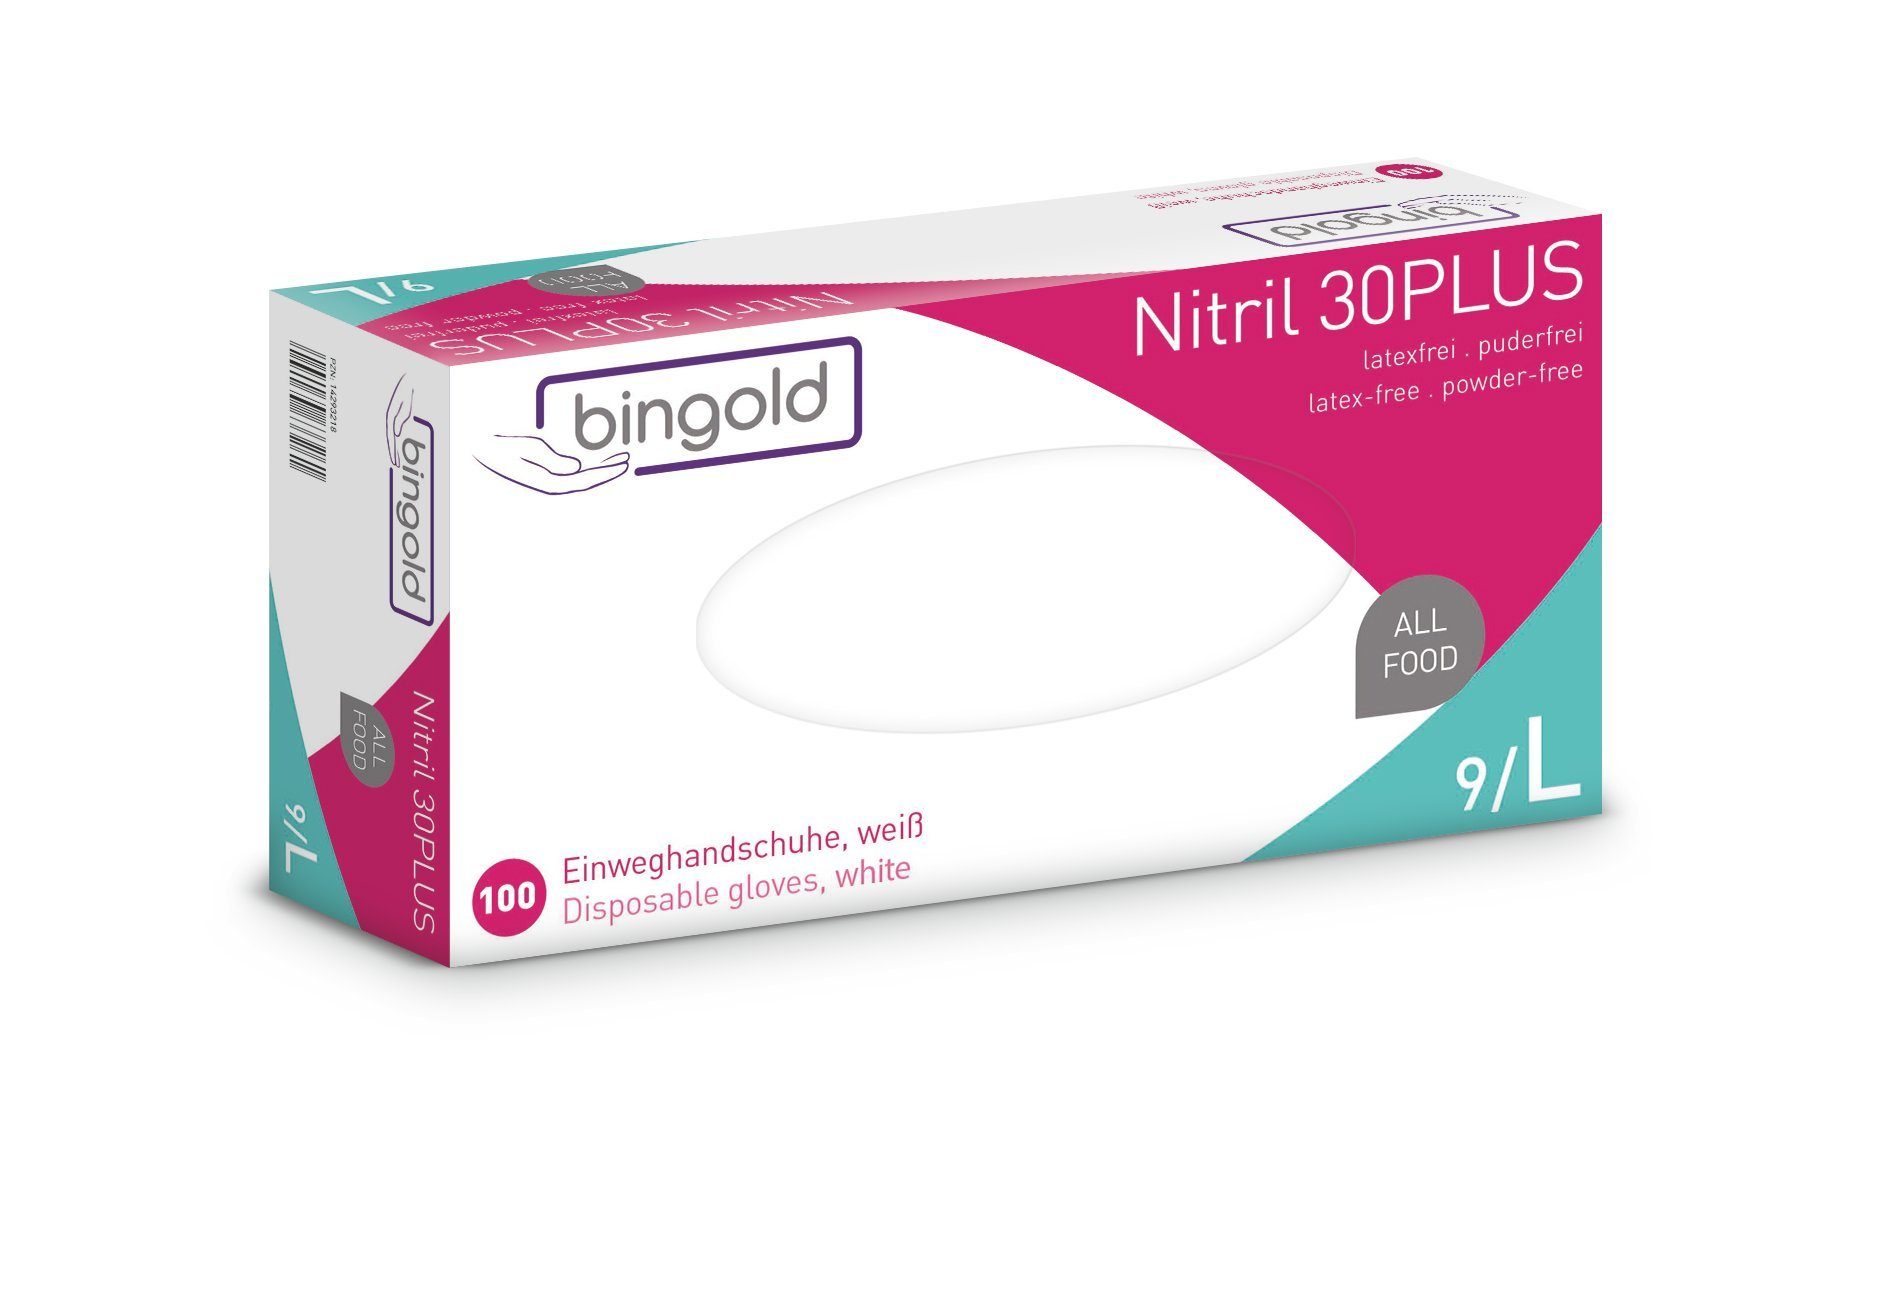 Bingold Einweghandschuhe »Bingold Nitril 30Plus - Einweghandschuhe - weiß  -« online kaufen | OTTO